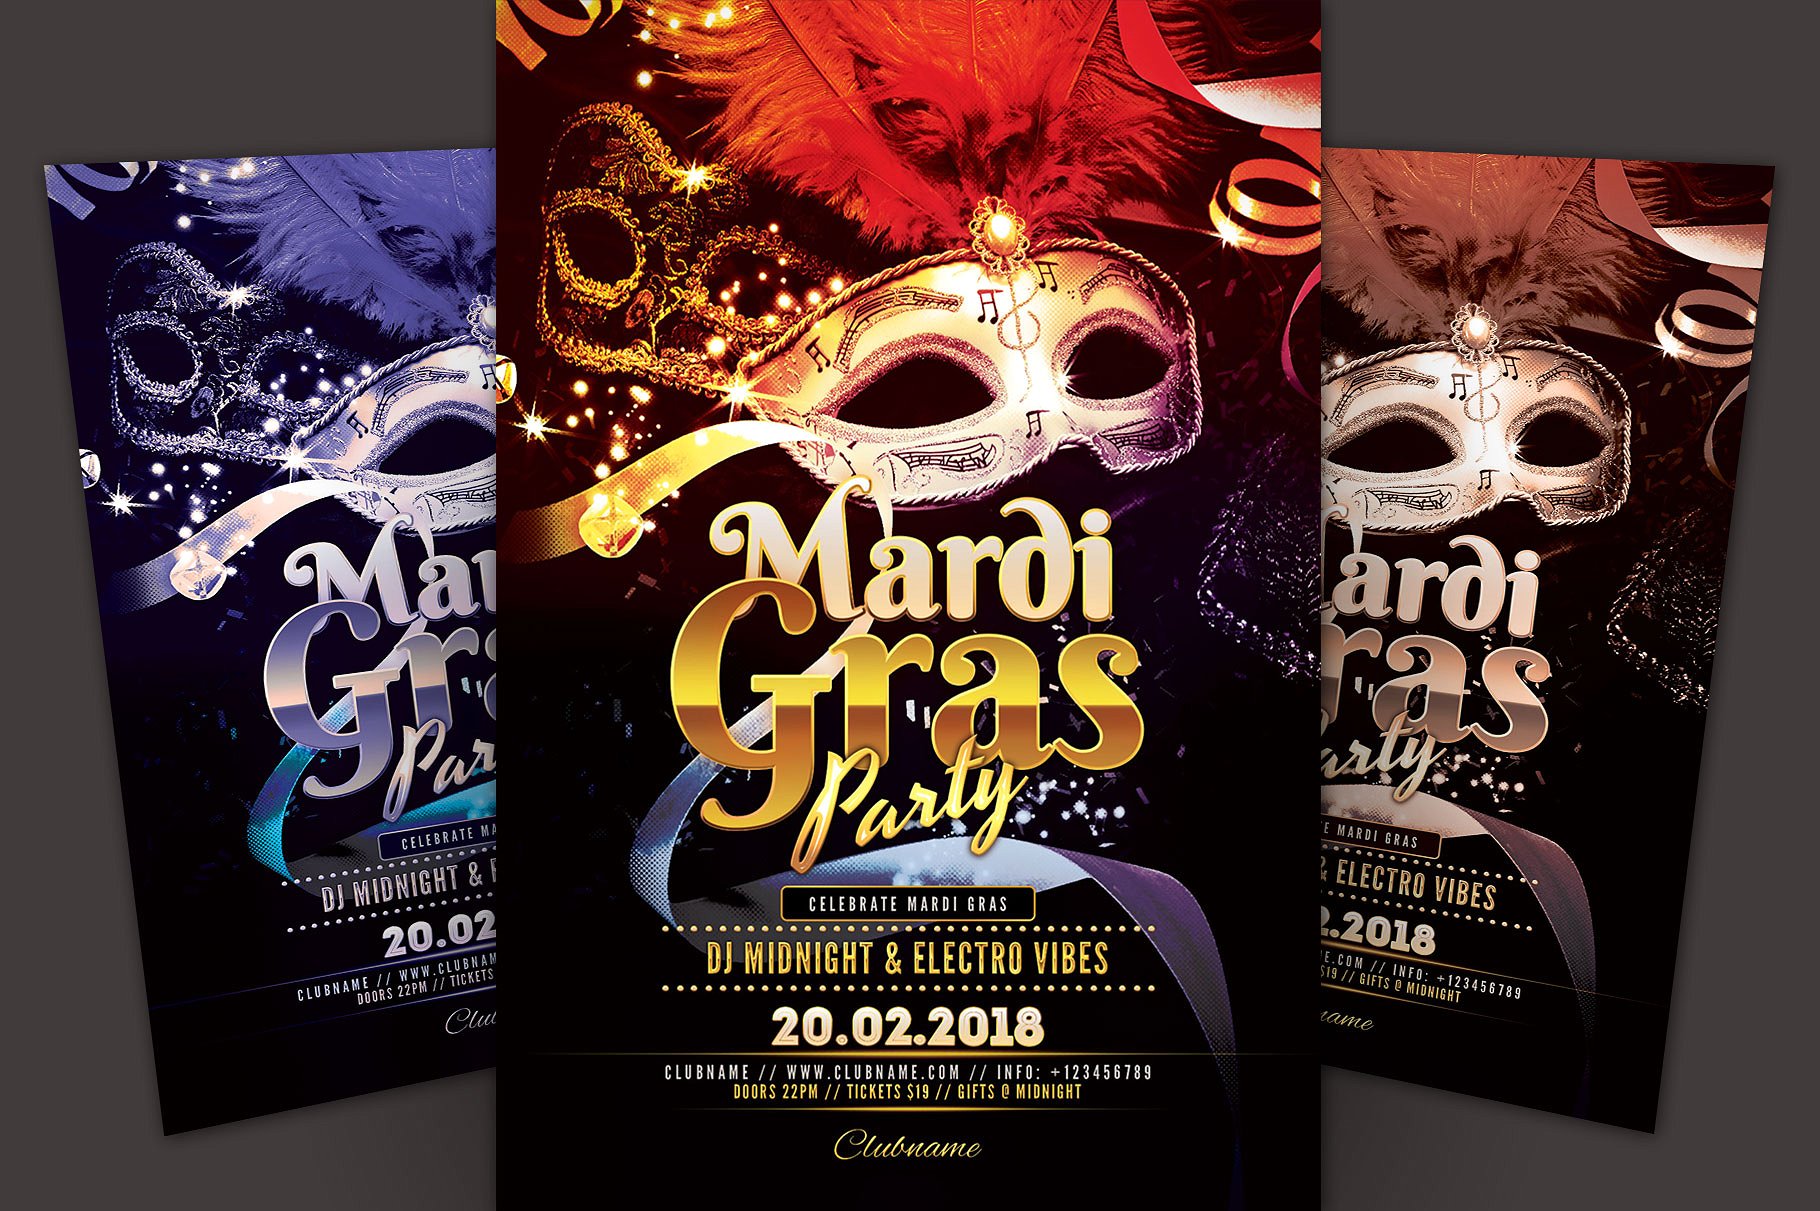 狂欢节派对活动宣传海报设计模板 Mardi Gras Party Flyer Template插图